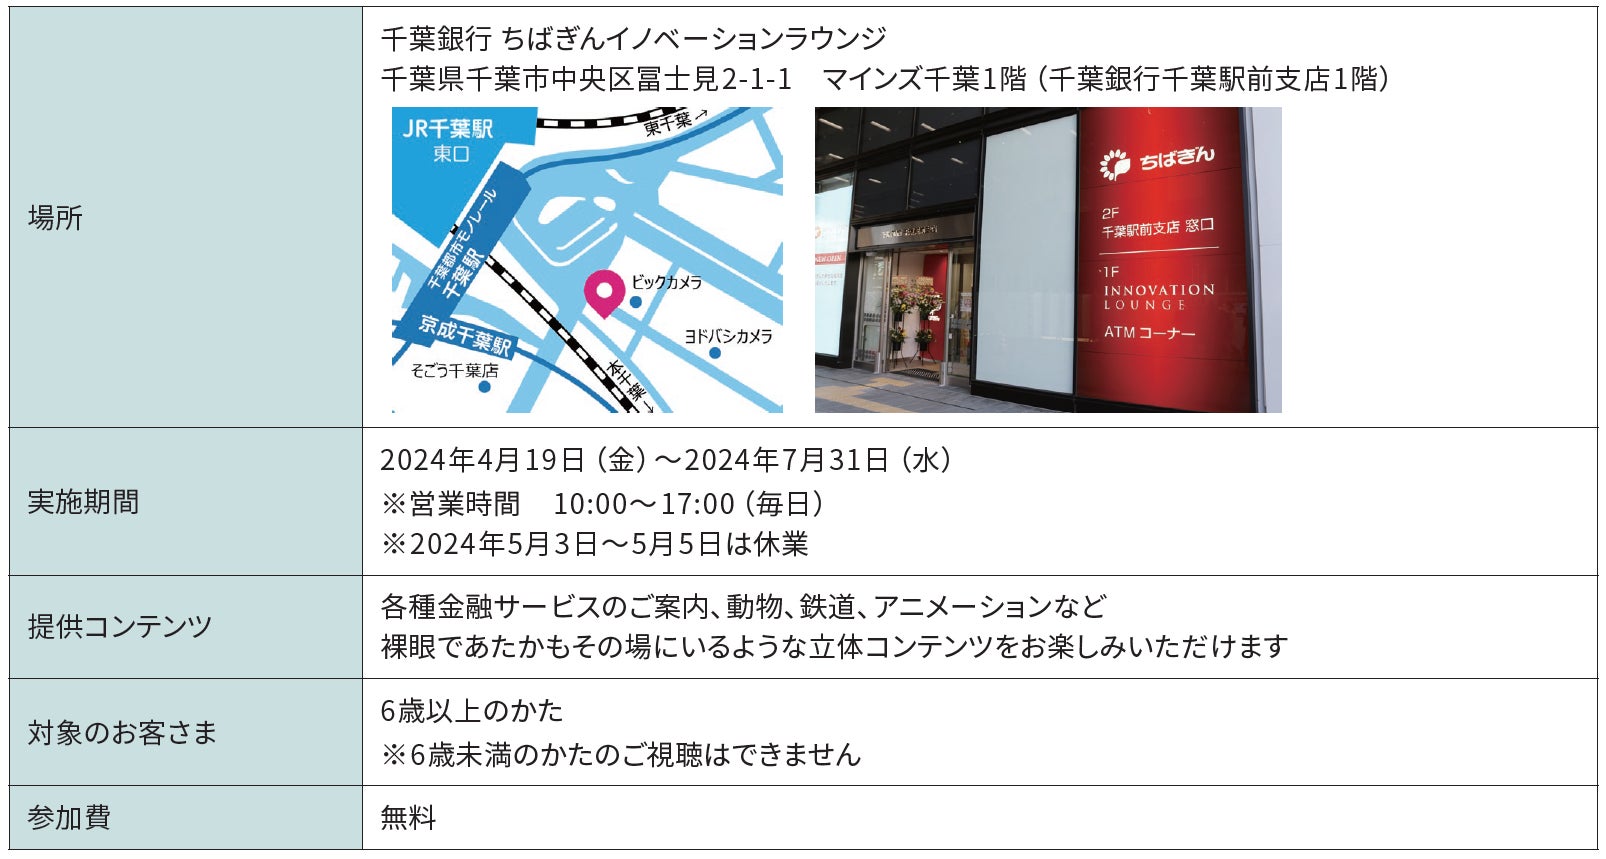 千葉銀行 ちばぎんイノベーションラウンジにおける「大型裸眼立体視ディスプレイ」設置のお知らせ